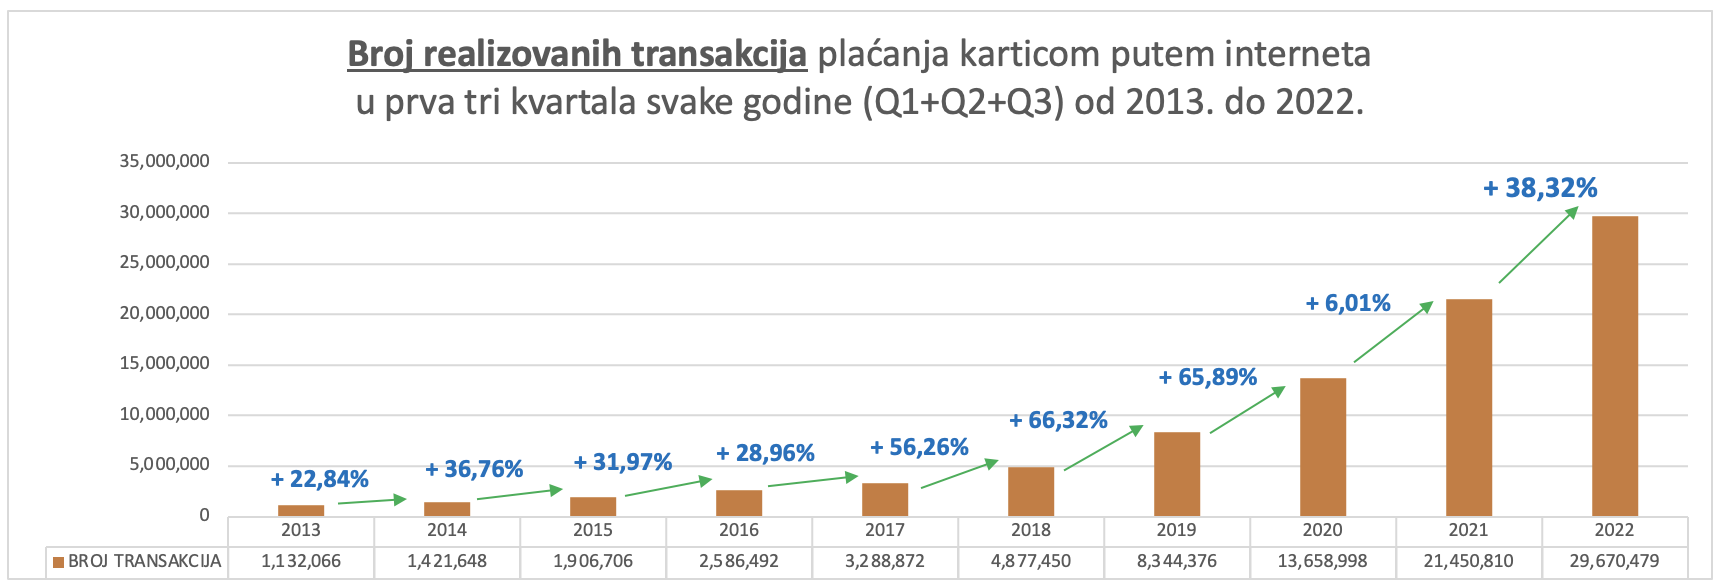 Ukupan broj transakcija plaćanja karticom putem interneta u Srbiji za prva tri kvartala  2022.